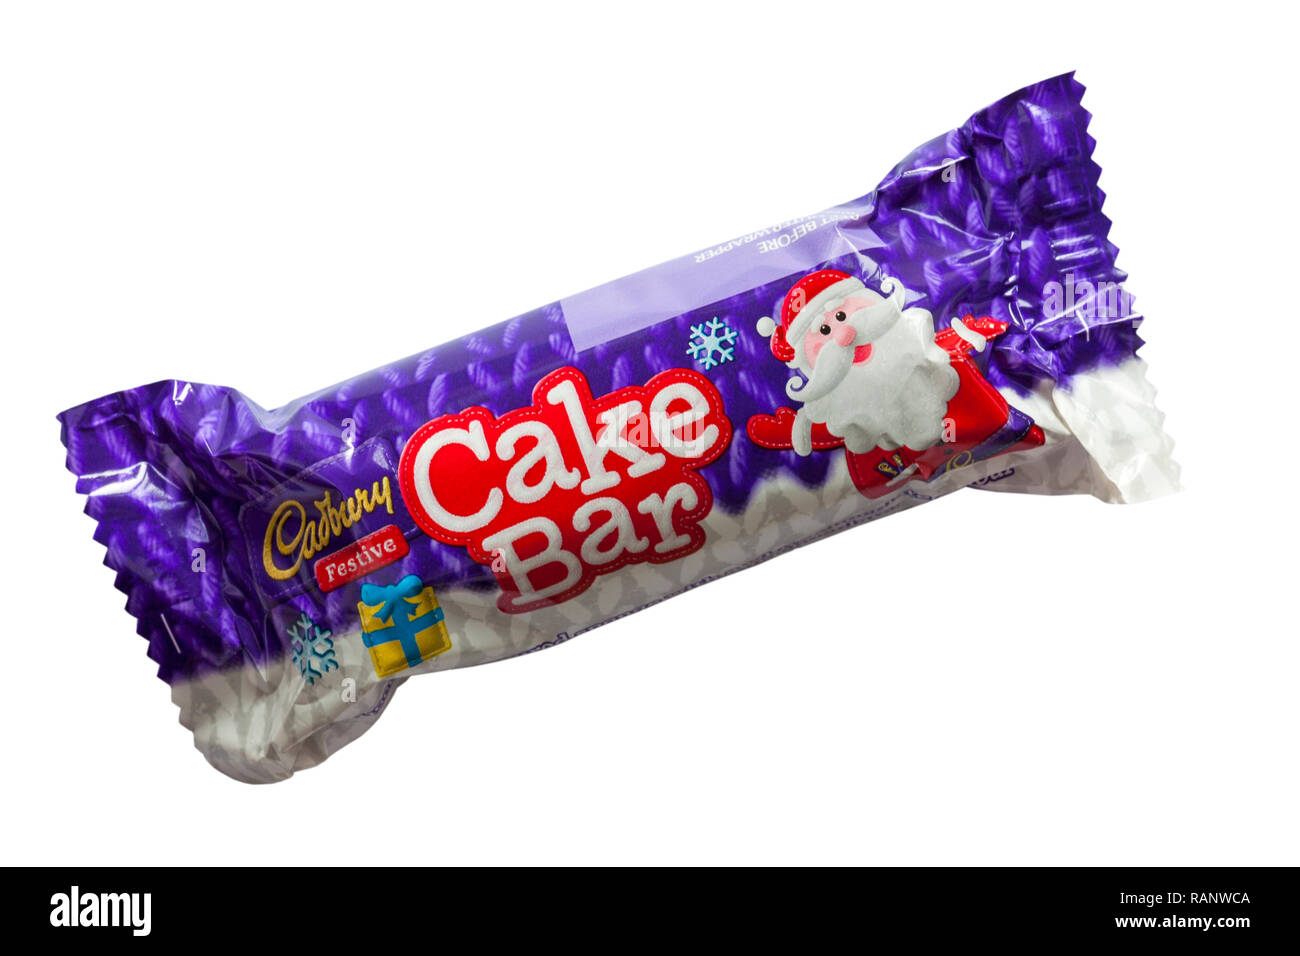 Cadbury festive cake bar isolated on white background - from Cadbury festive cake selection for Christmas Stock Photo